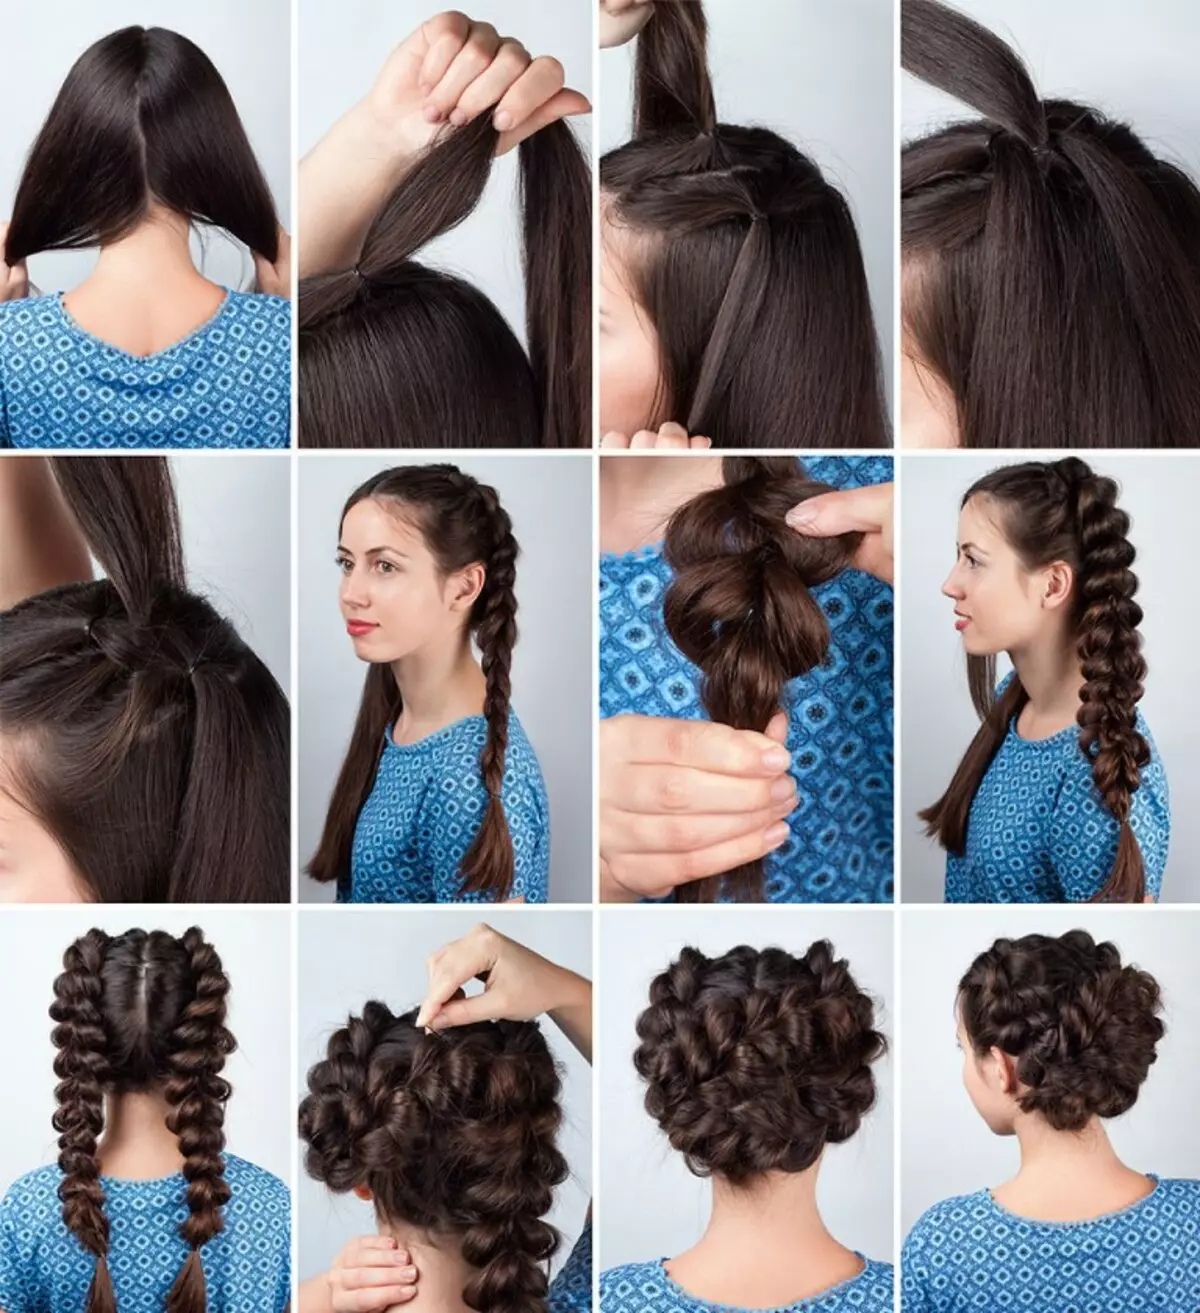 مدل مو برای دختران نوجوان (69 عکس): مدل موهای مد روز با موهای شل، گزینه های موهای بلند مو و طول مو، انتخاب مدل های زیبا و سرد برای دختران 12، 14 و 15 سال 16842_9